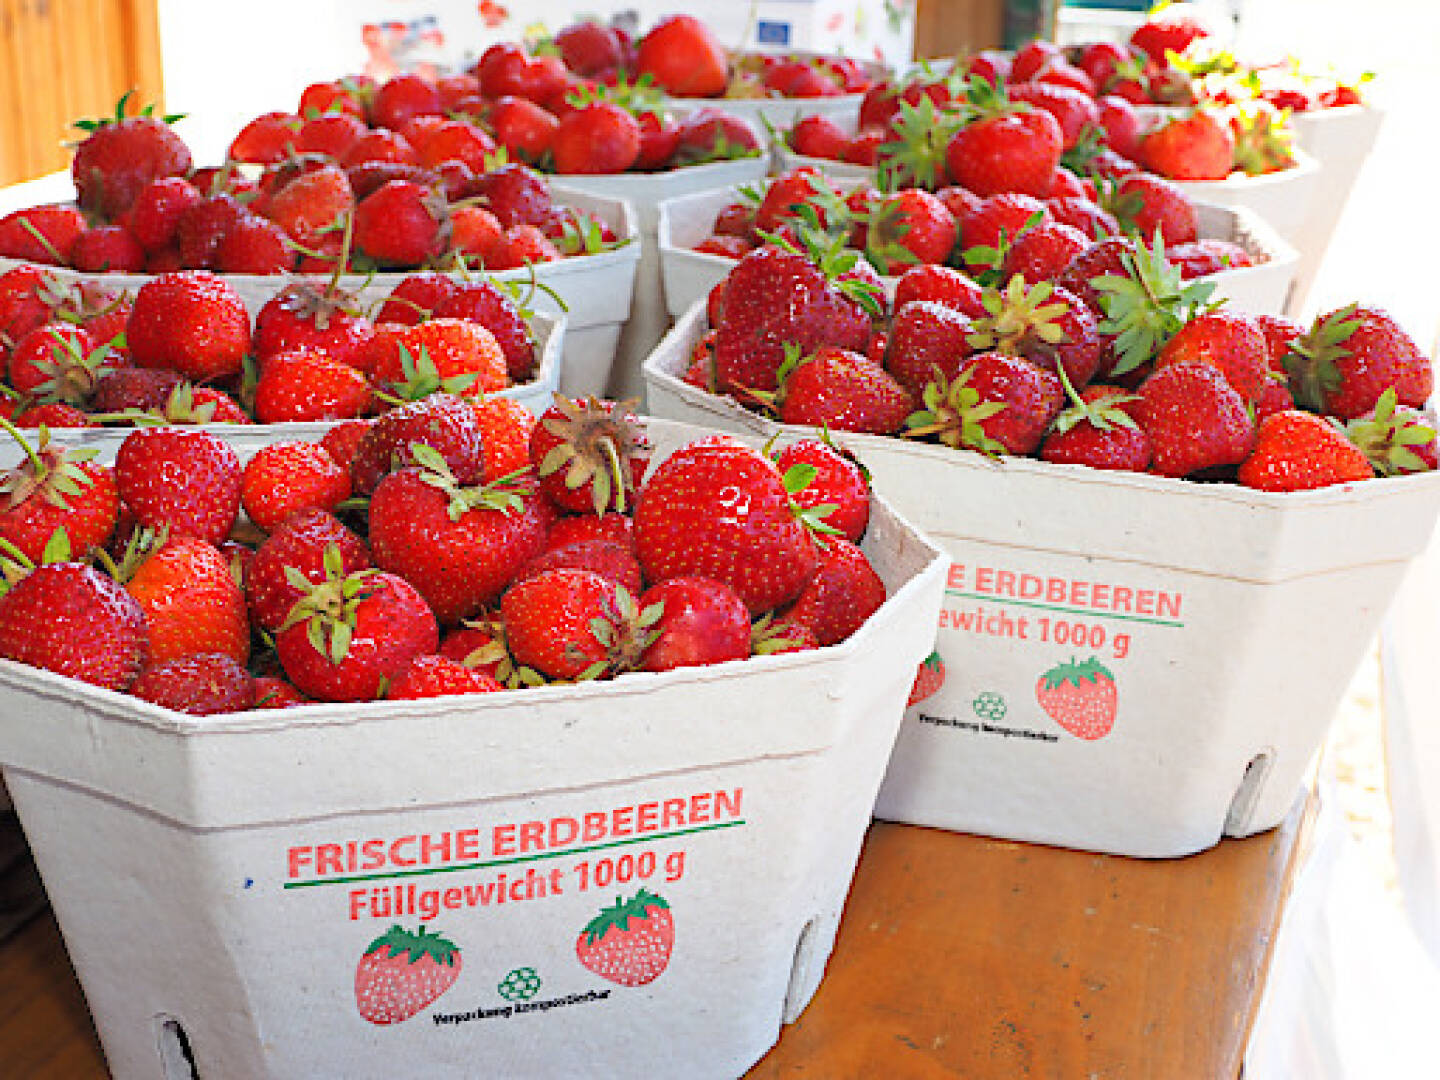 Bauernbund Niederösterreich (BBN): Erdbeeren schmecken regional am besten, Fotocredit:NÖ Bauernbund